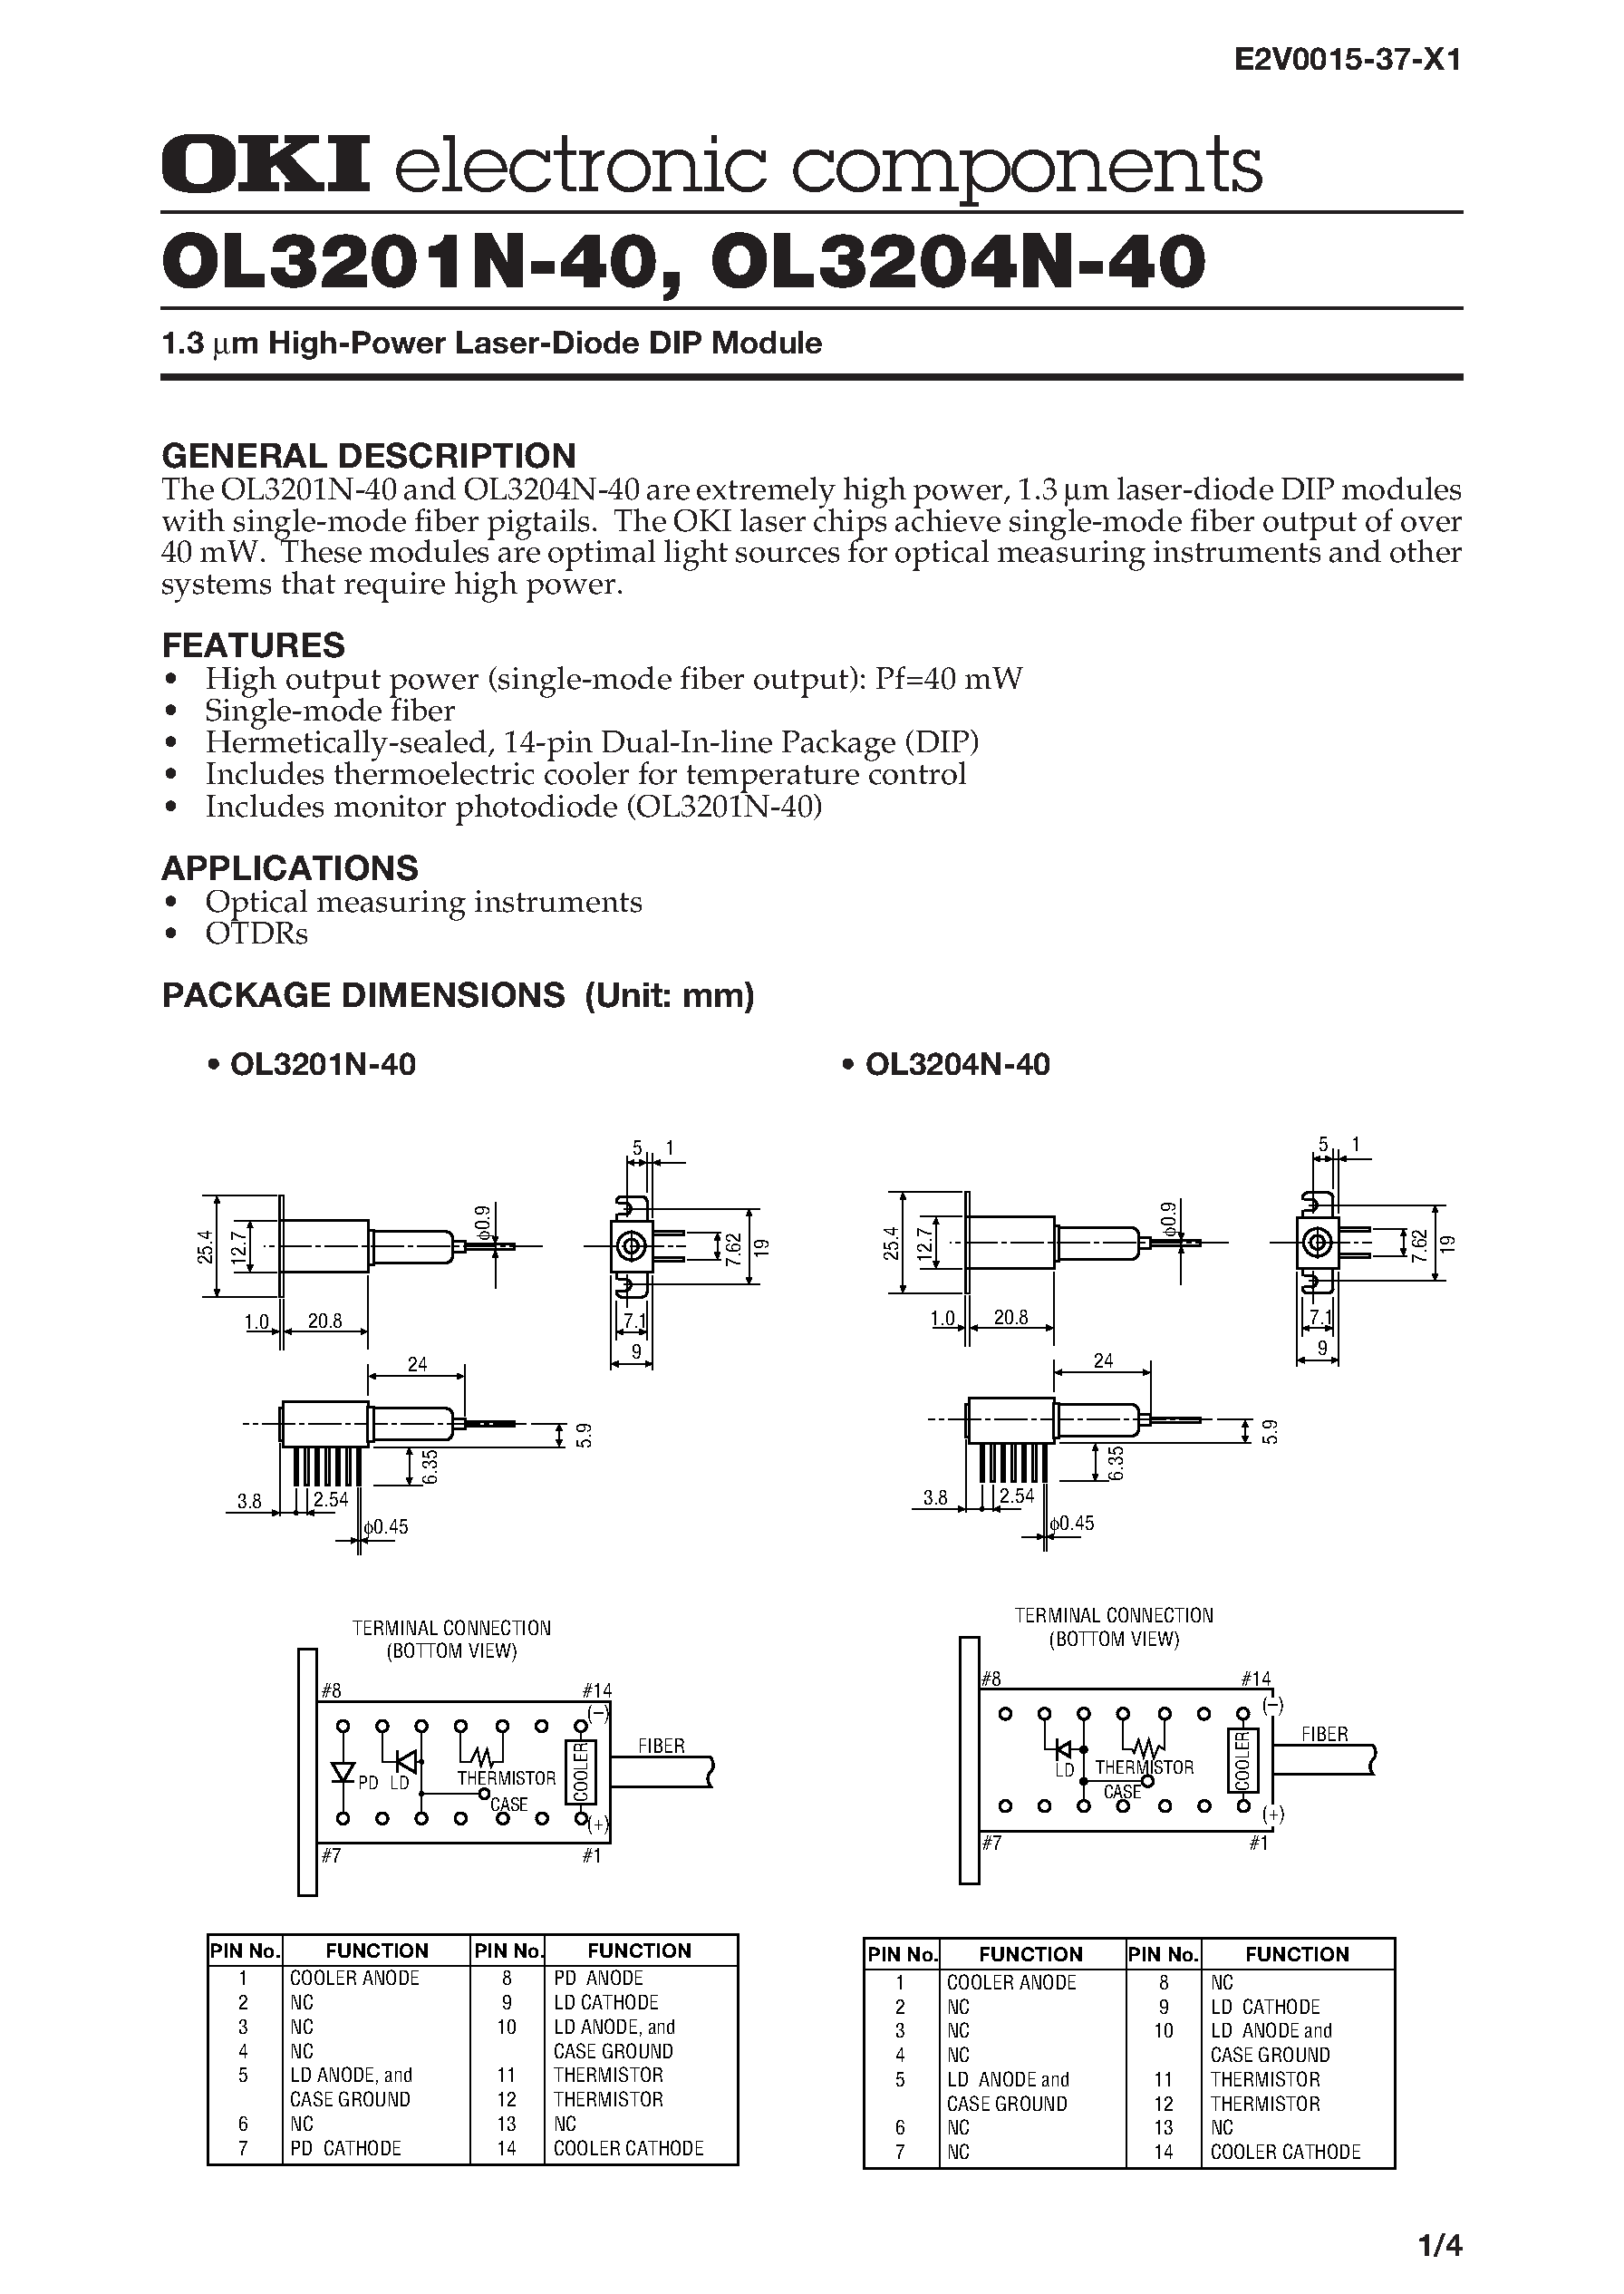 Datasheet OL3201N-40 - 1.3 m High-Power Laser-Diode DIP Module page 1